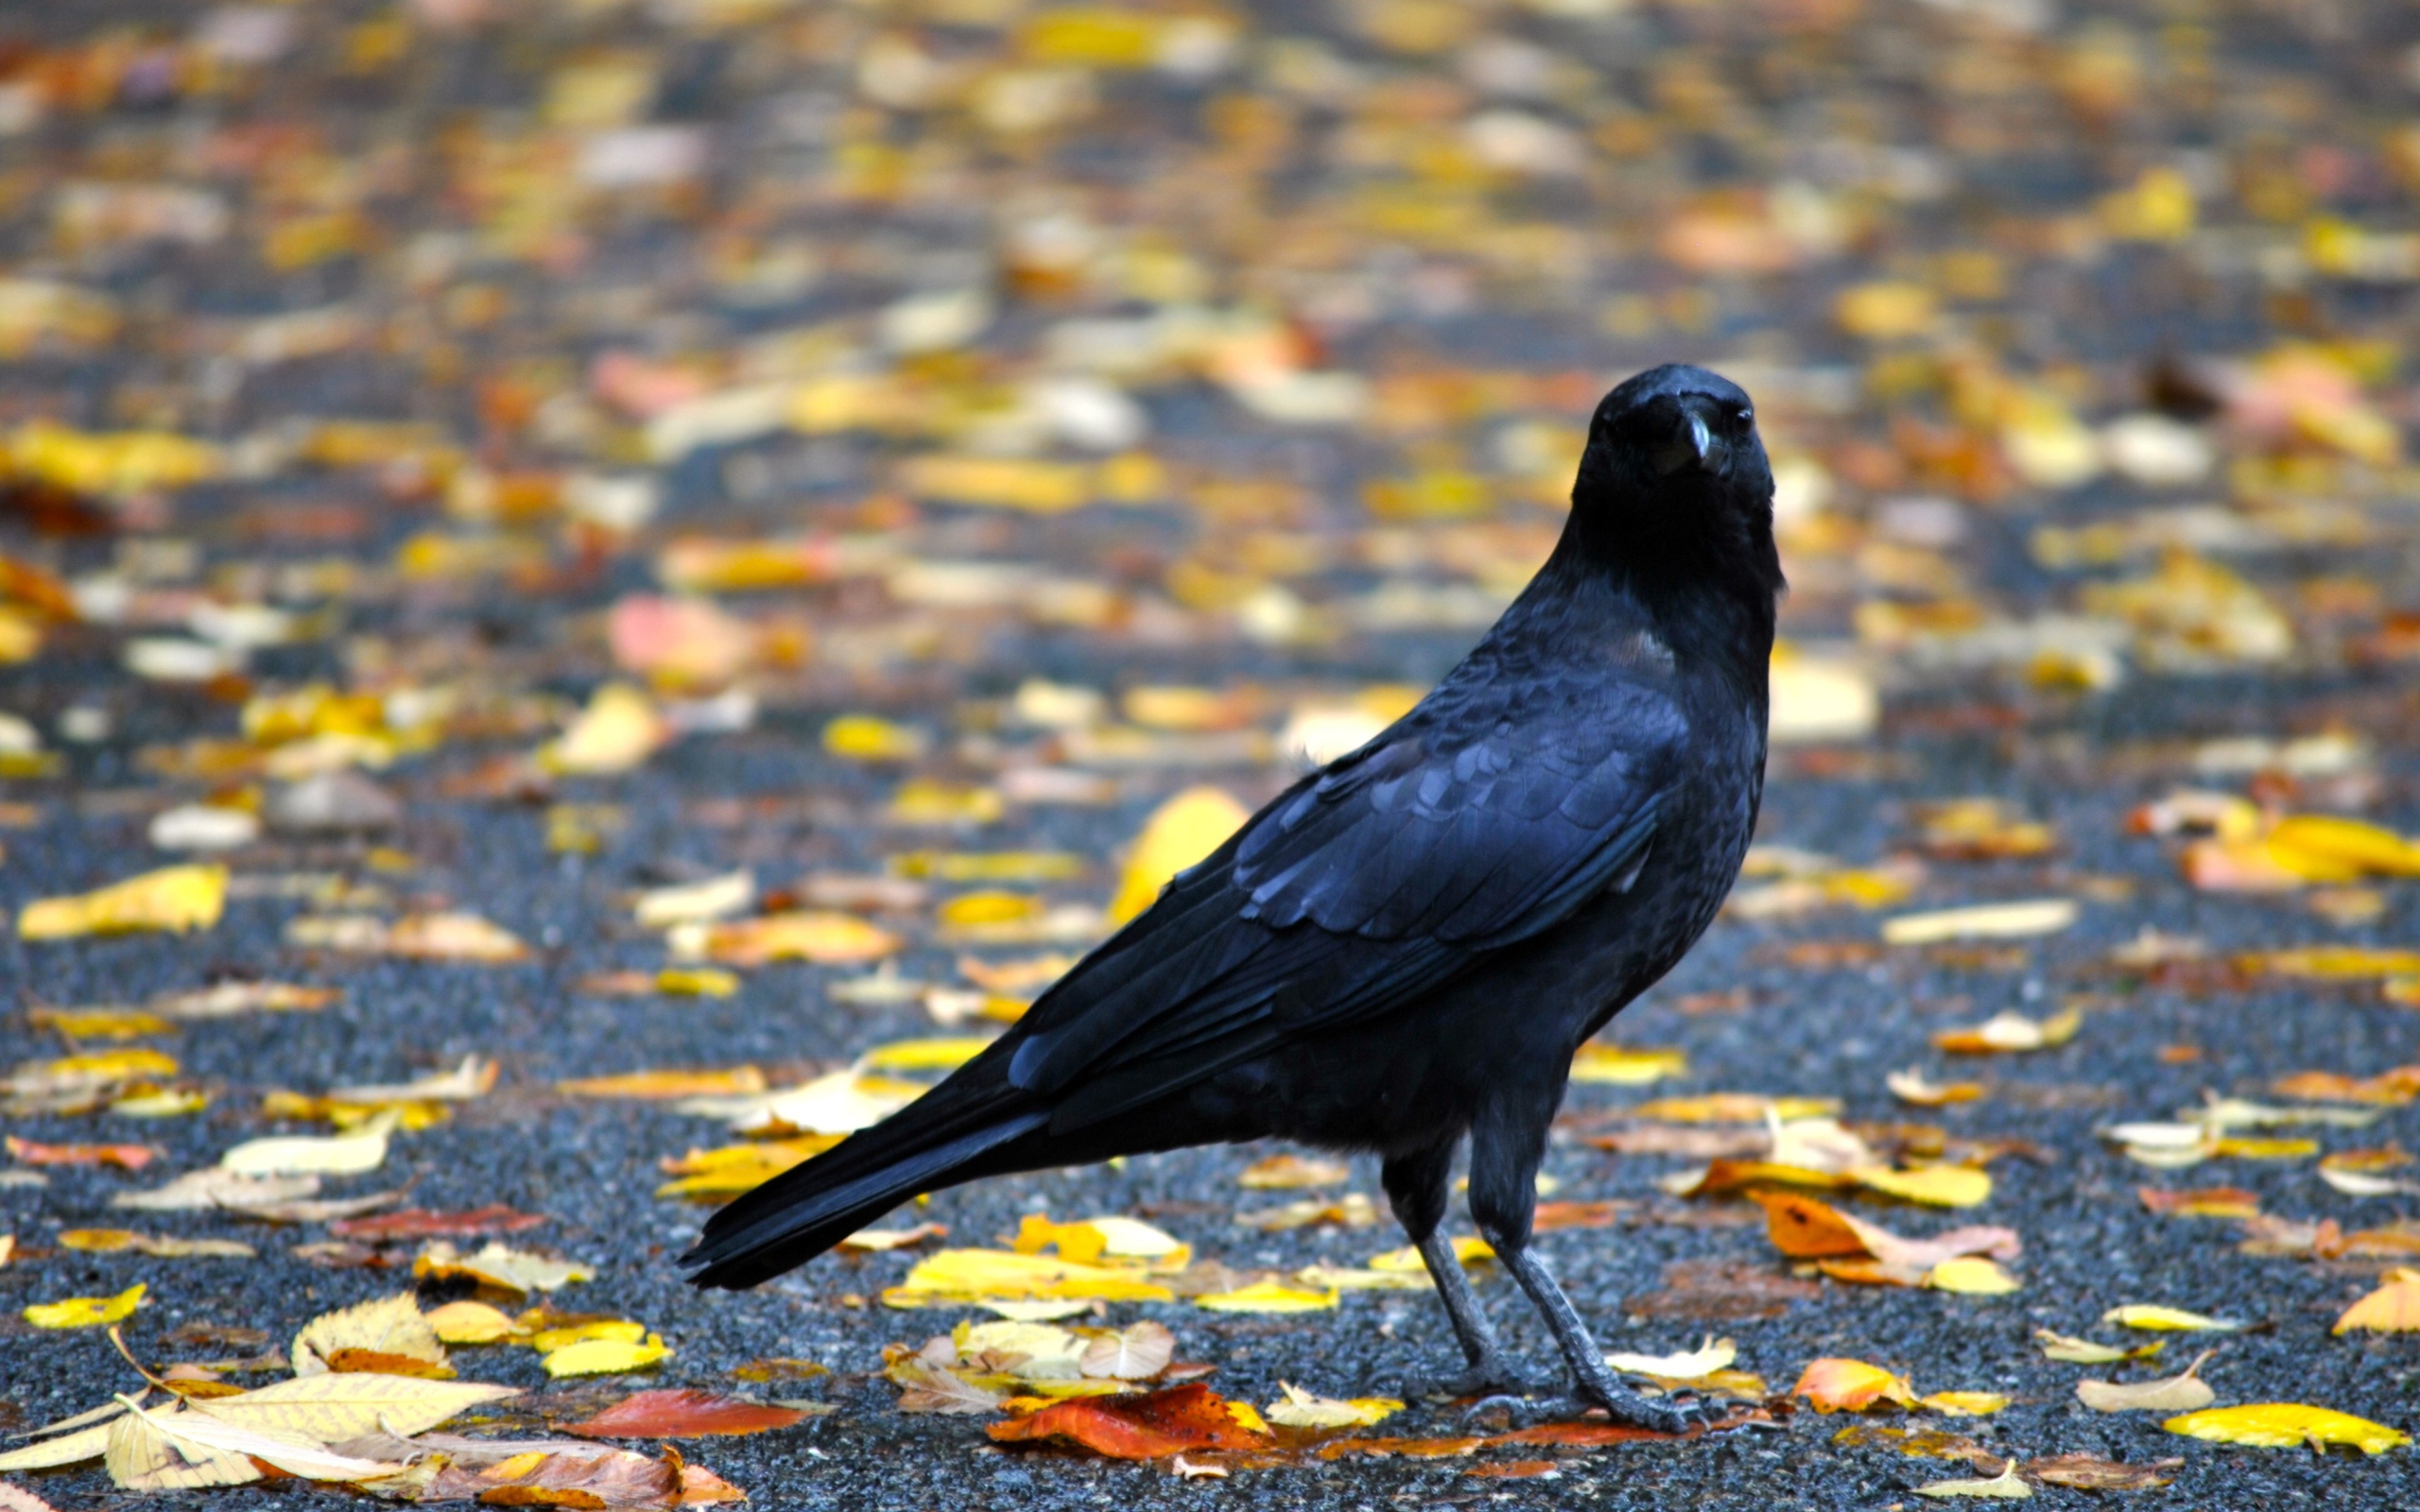 Черный ворон на земле с желтыми опавшими листьями осенью 